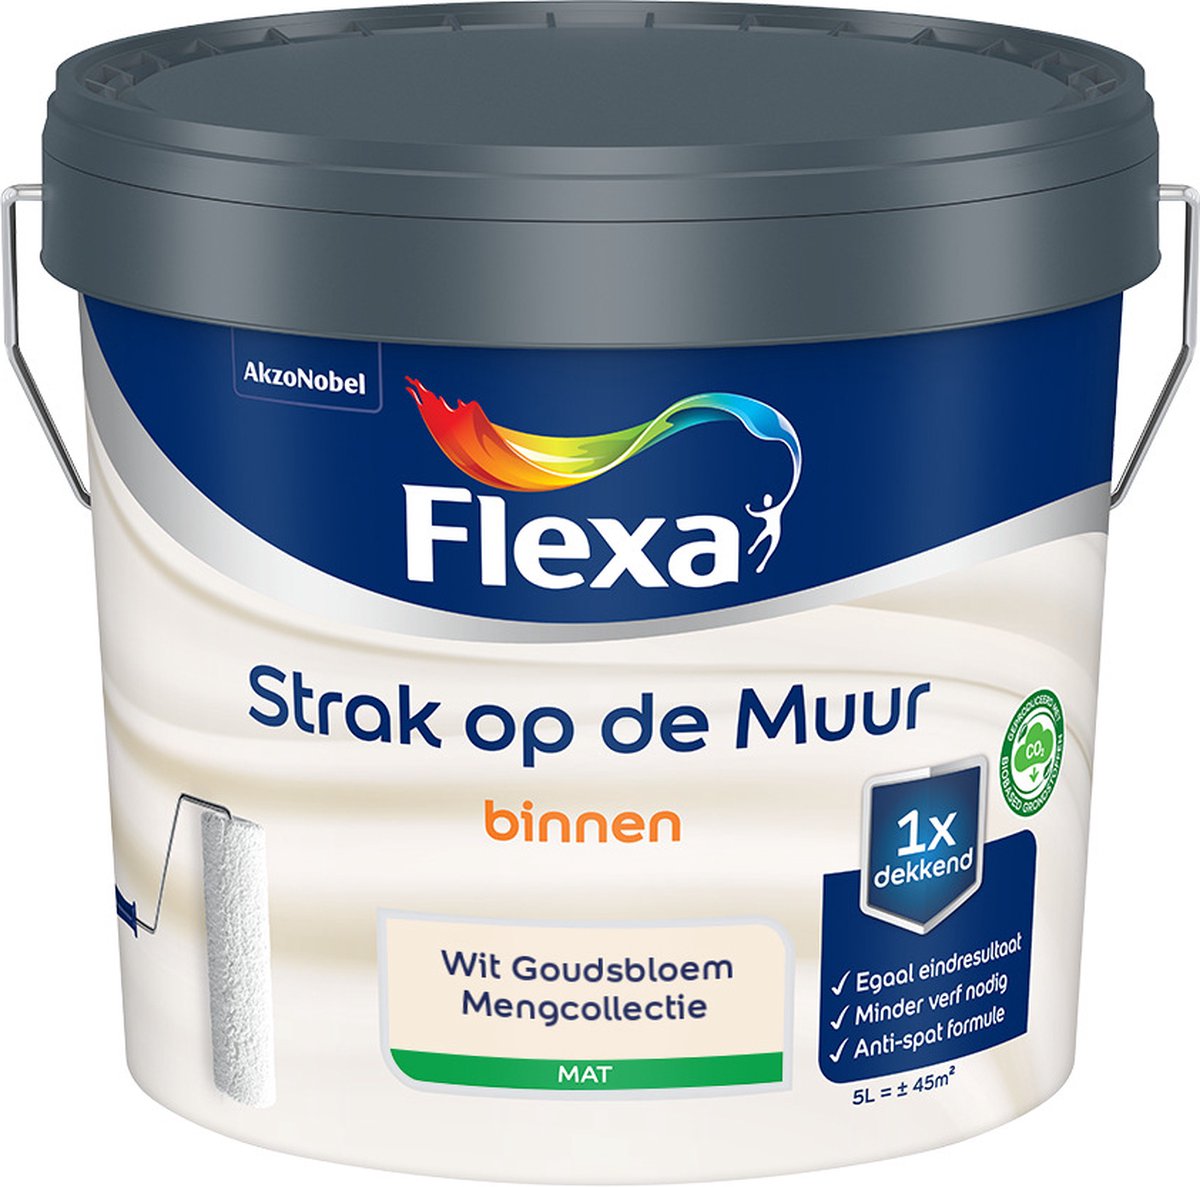 Flexa Strak op de muur - Muurverf - Mengcollectie - Wit Goudsbloem - 5 Liter